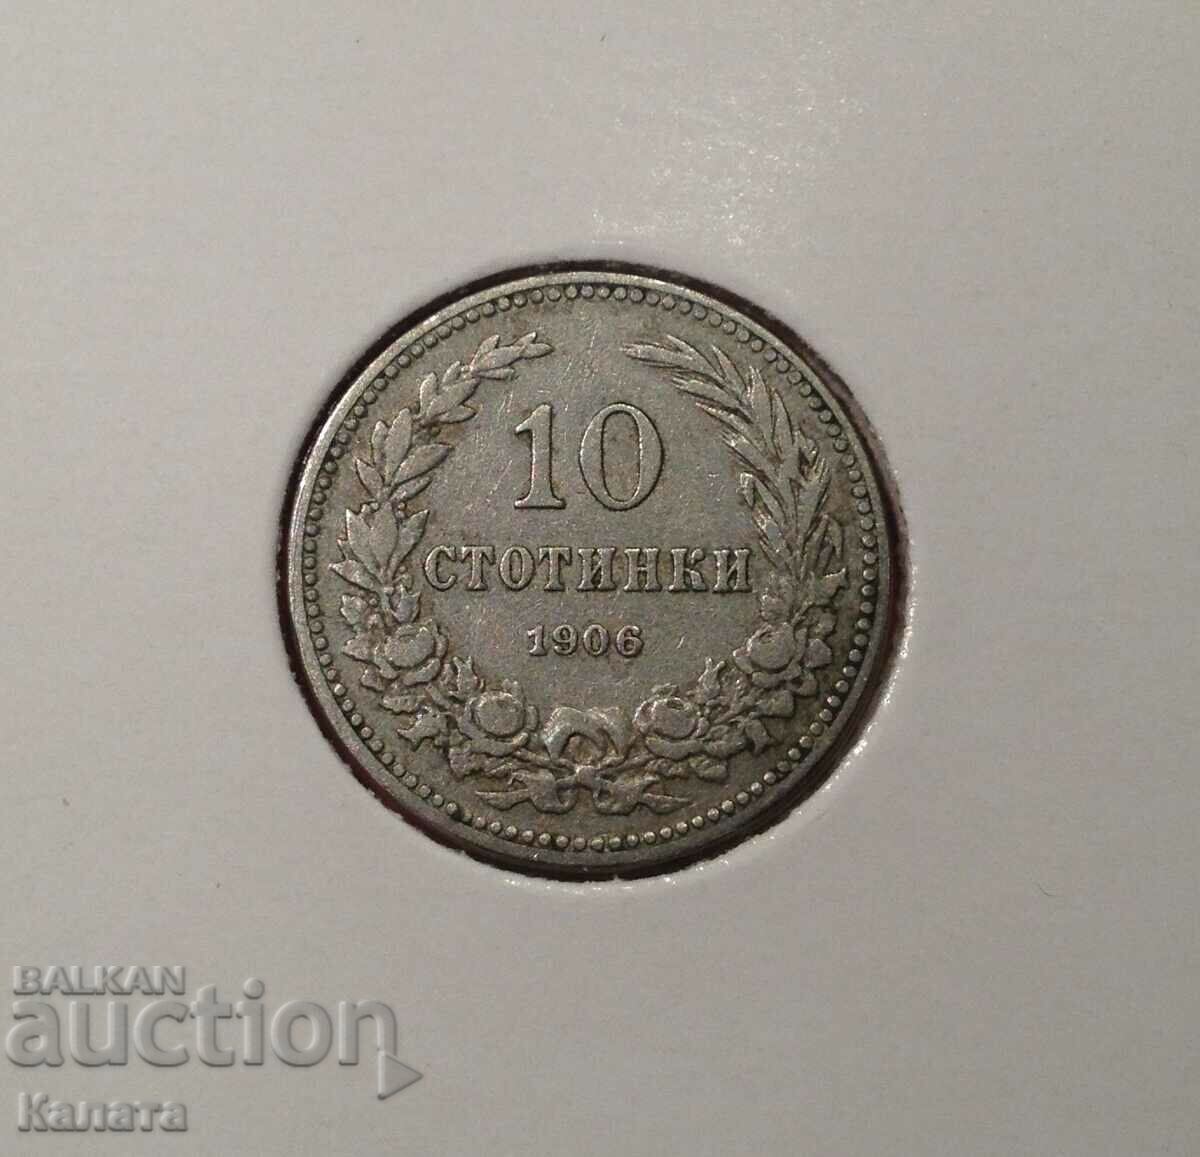 10 cents 1906 "No dash"